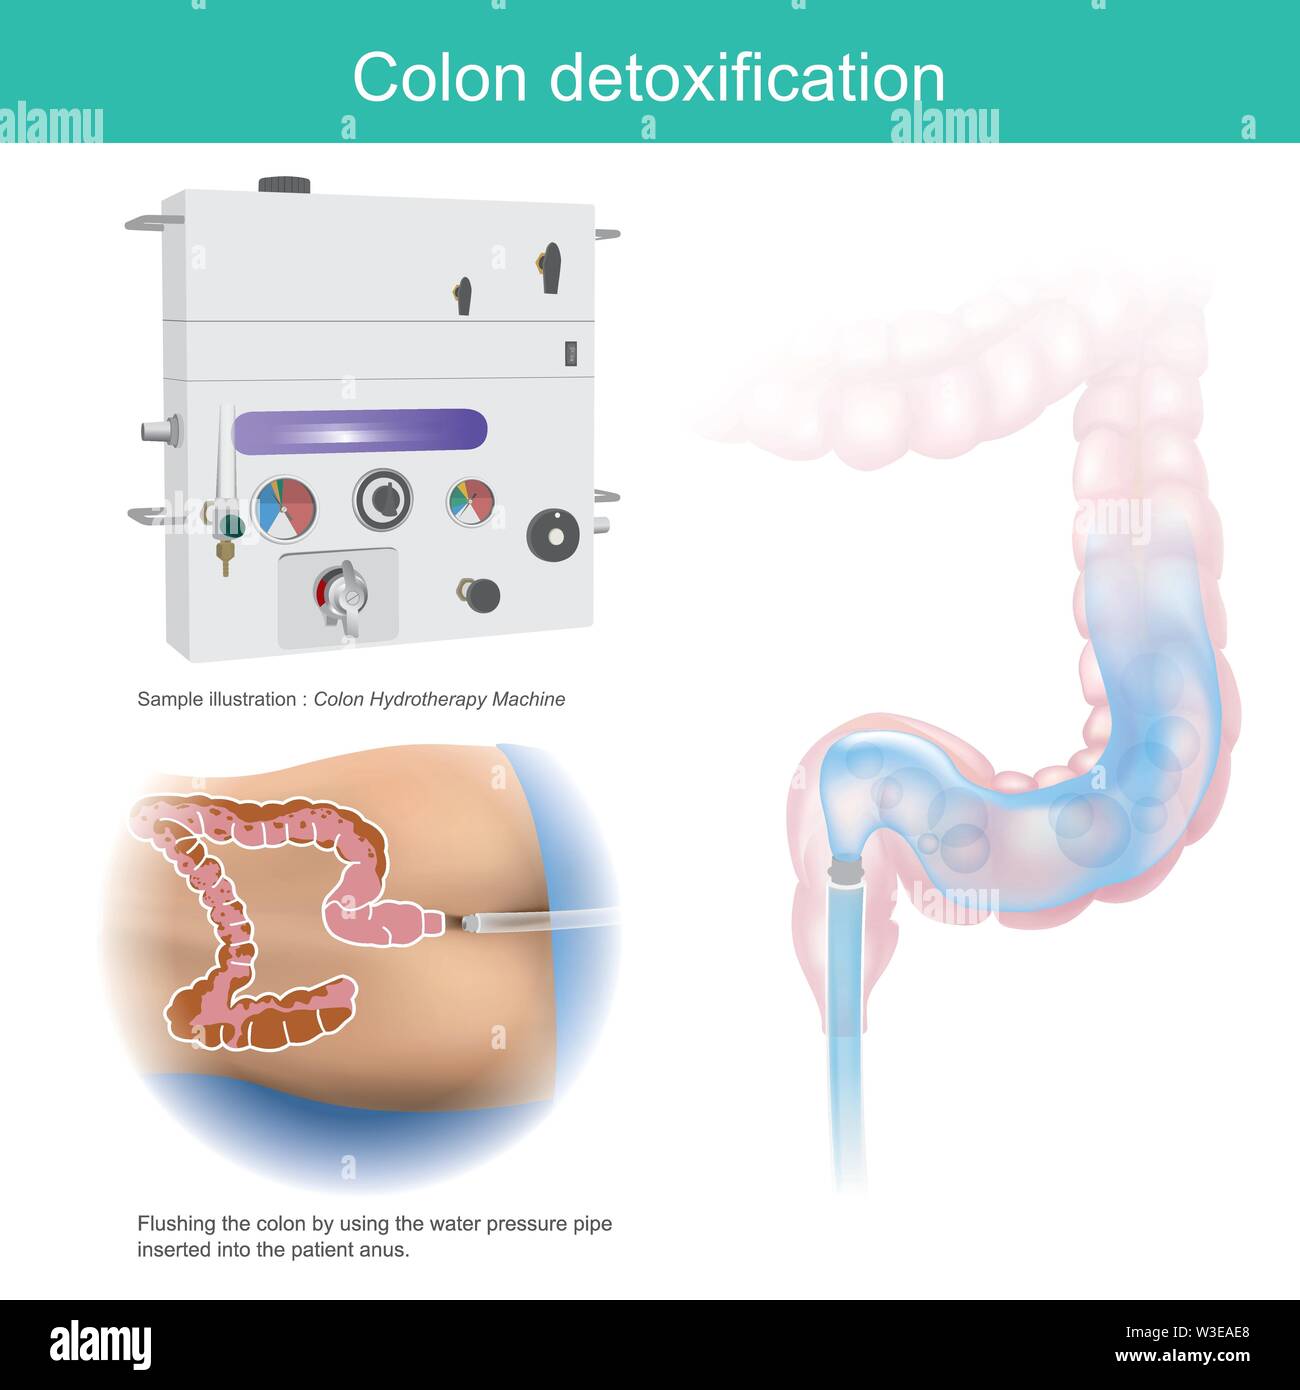 La désintoxication du colon. Exemple d'illustration le rinçage du colon en utilisant le tuyau de pression d'eau inséré dans l'anus du patient. Illustration de Vecteur